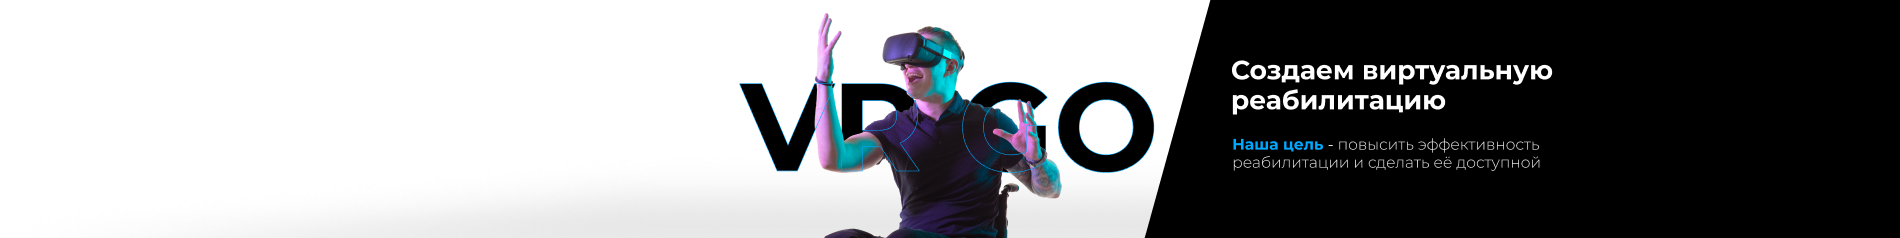 обложка автора VR GO